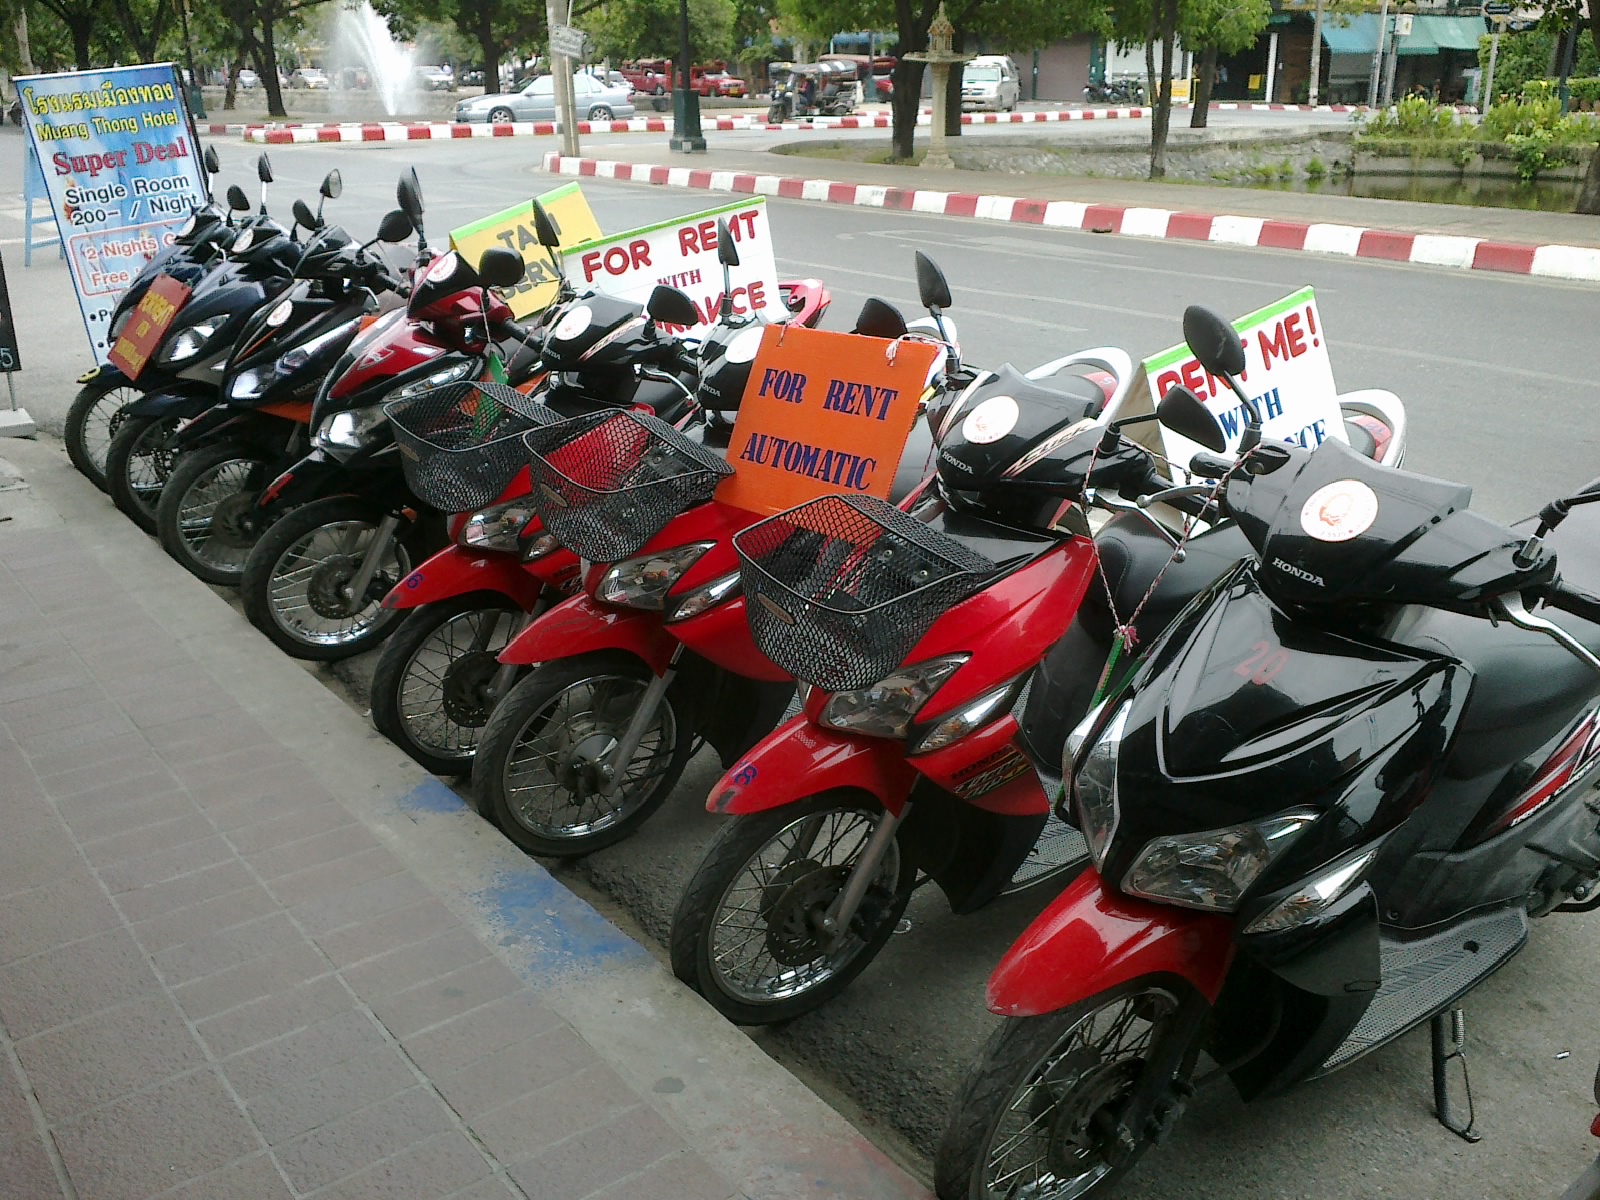 Golpe de roubo de motocicleta - Visitar Camboja